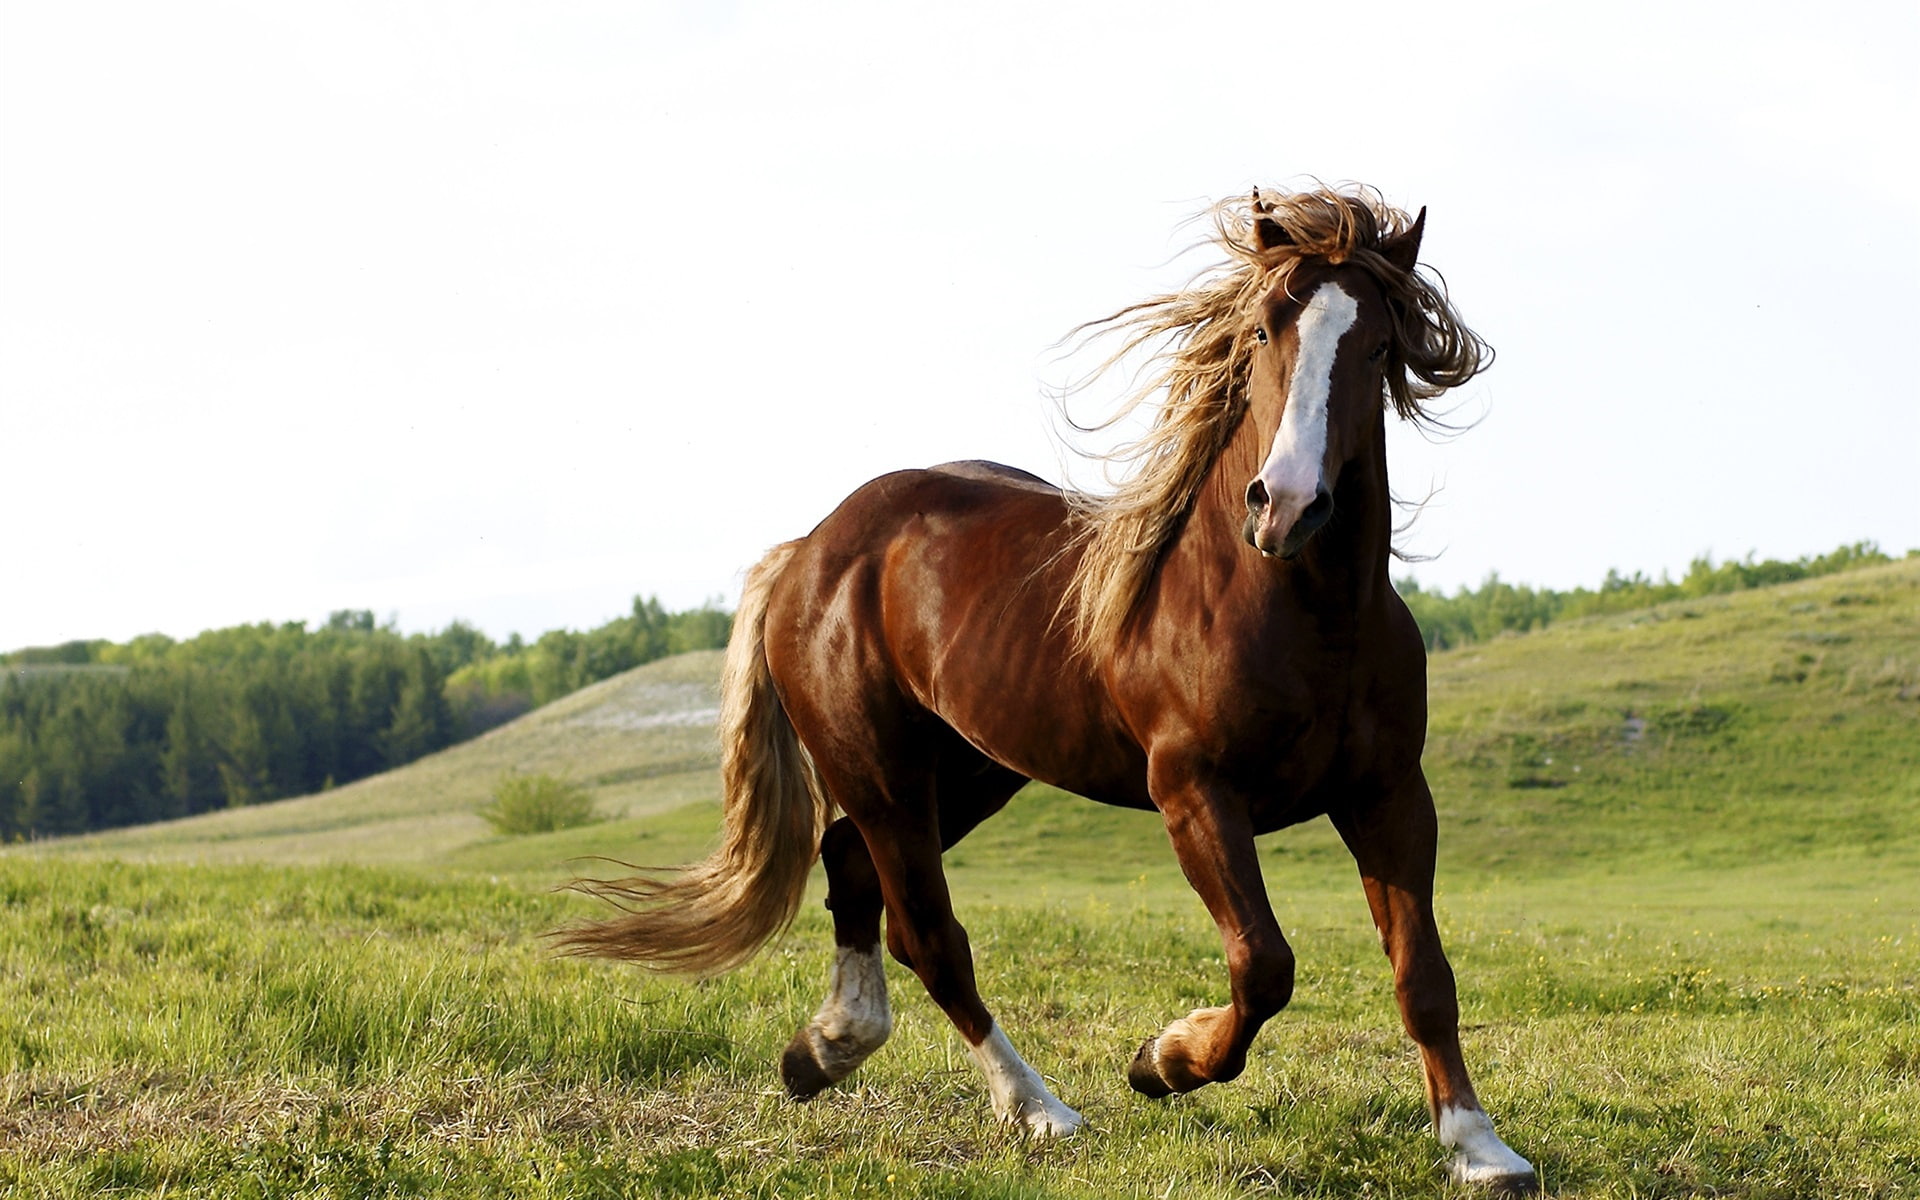 Brown horse, grass, sky